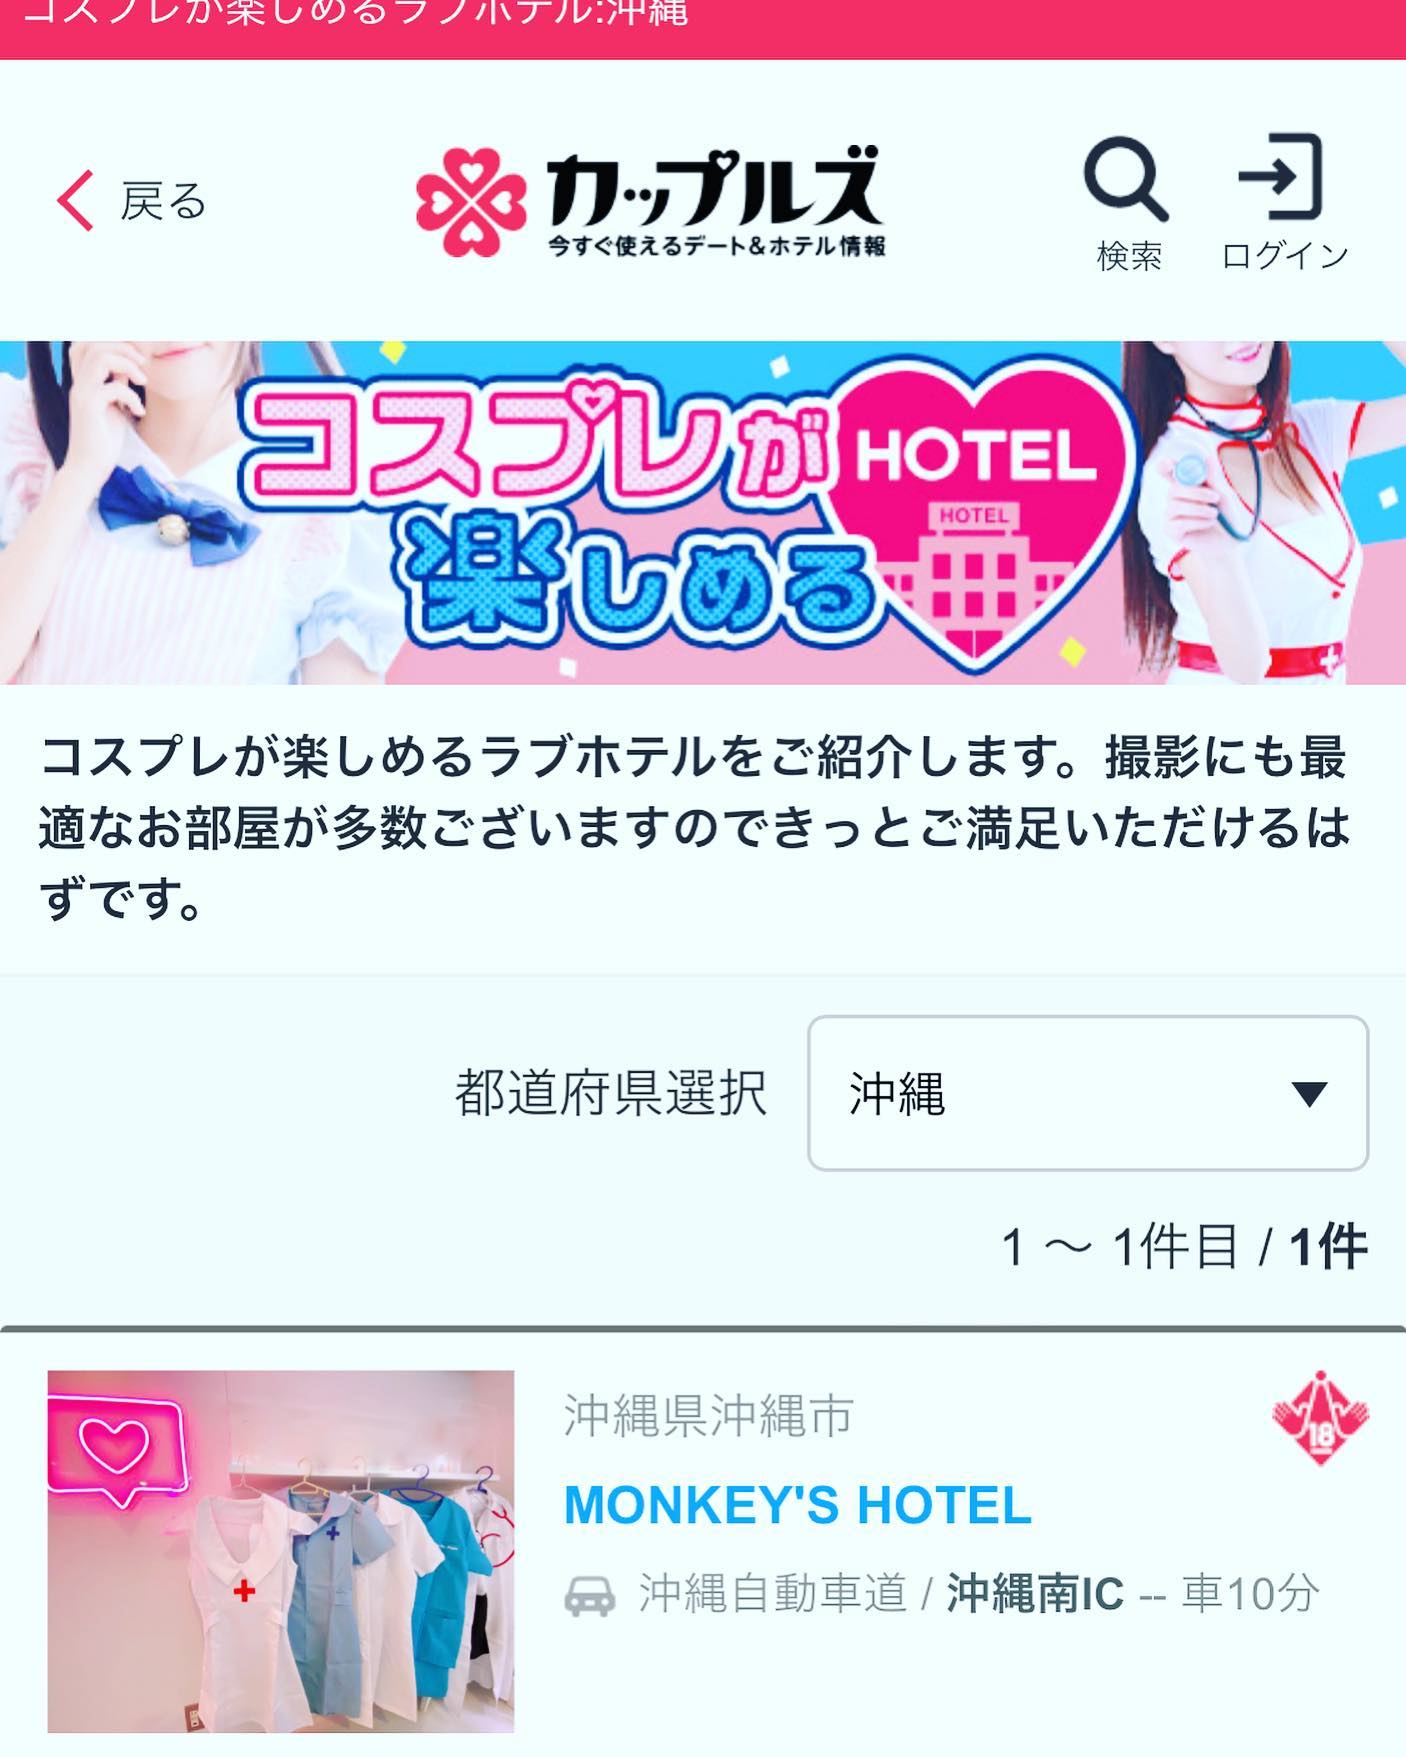 ＨＰhttp://hotel-monkeys.fanTwitterhttps://twitter.com/_monkeeeeeys皆　カップルズのコスプレが楽しめるHotelでMONKEY'Sがとりあげられたぁ〜ありがとうございます自称沖縄でいちばんコスプレがあるホテルだもんねこれからもどんどん増やしていくんでみんなもコスプレを楽しもう❣️みんなはどんなコスプレがお好きですか️...#沖縄のインフルエンサーになりたい#コスプレがいちばん多いホテル#ノリのホテル#MONKEYS#HOTELMONKEYS#hotel#ホテル#okinawa#沖縄#期間限定#グランドオープン#沖縄グルメ#レジャーホテル#今だけ#限定#sky#インスタ映え#ばえスポット#幸せ時間#ラブホテル#沖縄市#沖縄市ラブホテル#楽しい時間#モンキーズホテル#ホテルモンキーズ#モンキーズ#セール#monkeyshotel